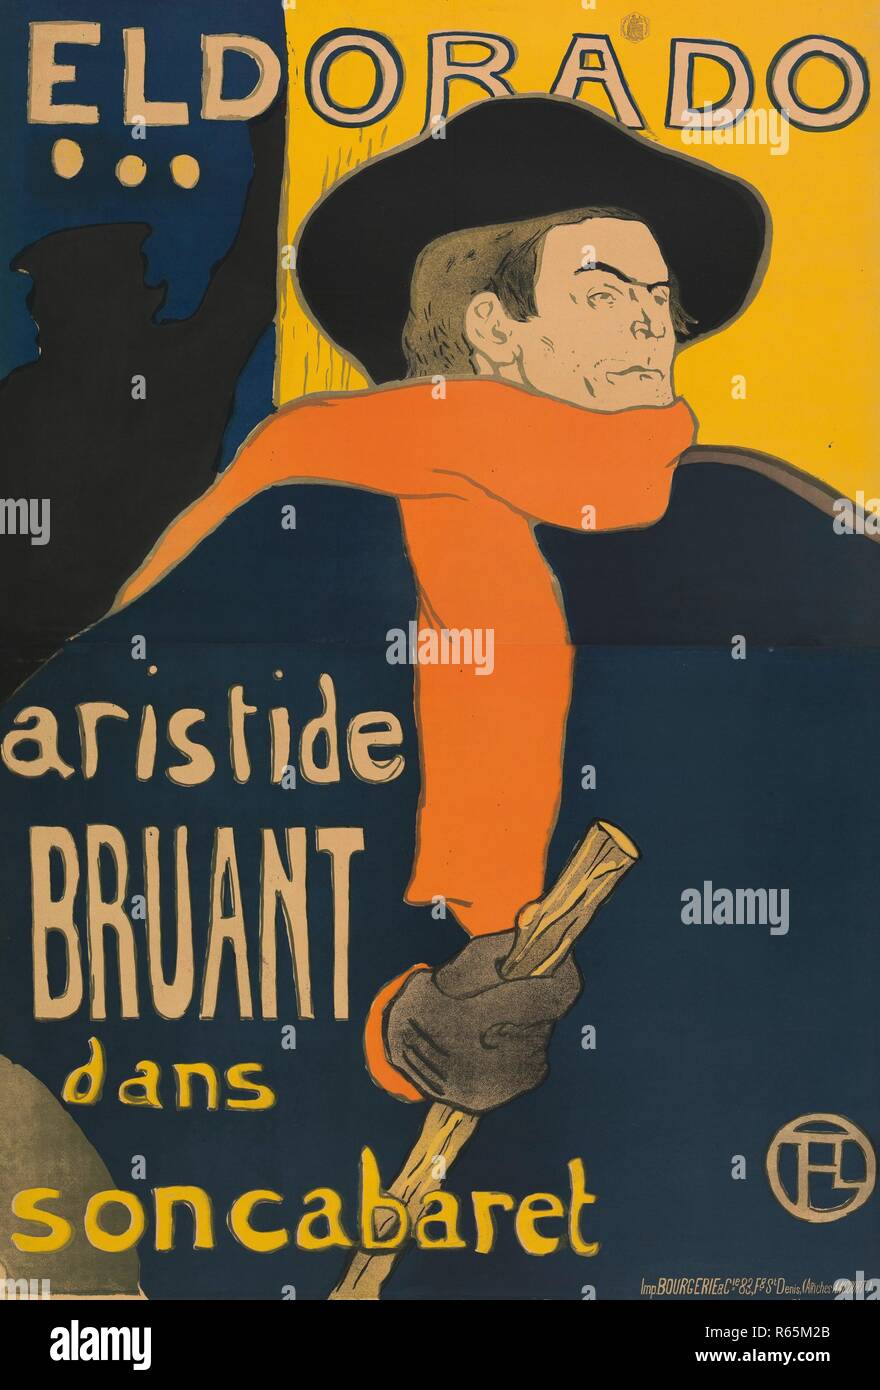 Poster for the performance of Aristide Bruant in the Café-concert Eldorado. Dimensions: 144 cm x 98 cm, 137 cm x 93.5 cm, 151.5 cm x 105.7 cm. Museum: Van Gogh Museum, Amsterdam. Author: de Toulouse-Lautrec, Henri. Stock Photo